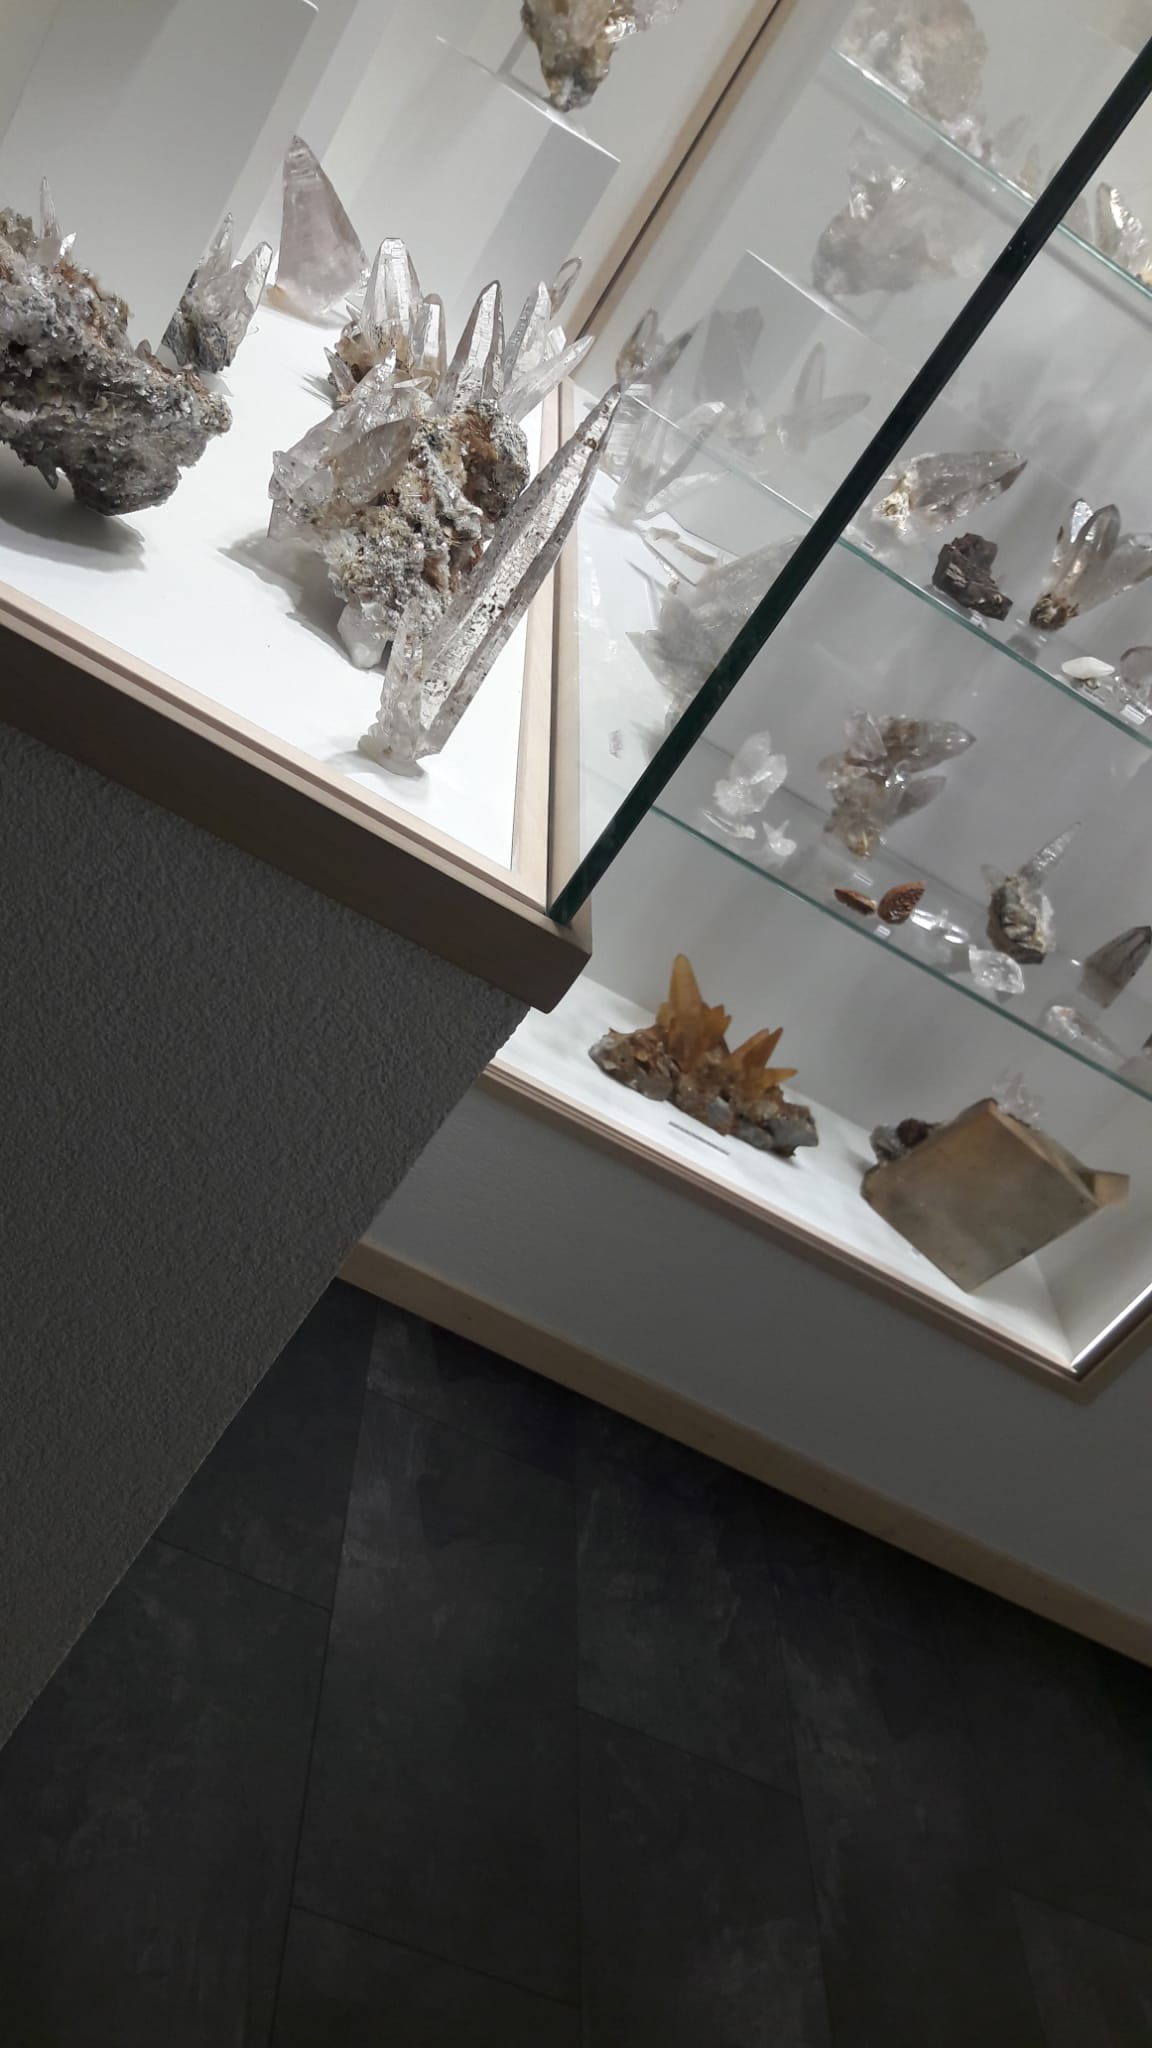 Kristalle und Mineralien von Schönheit gezeichnet im Schweizer Strahler Museum und der  Schweizerbergkristalle by Werner Schmidt im Wallis